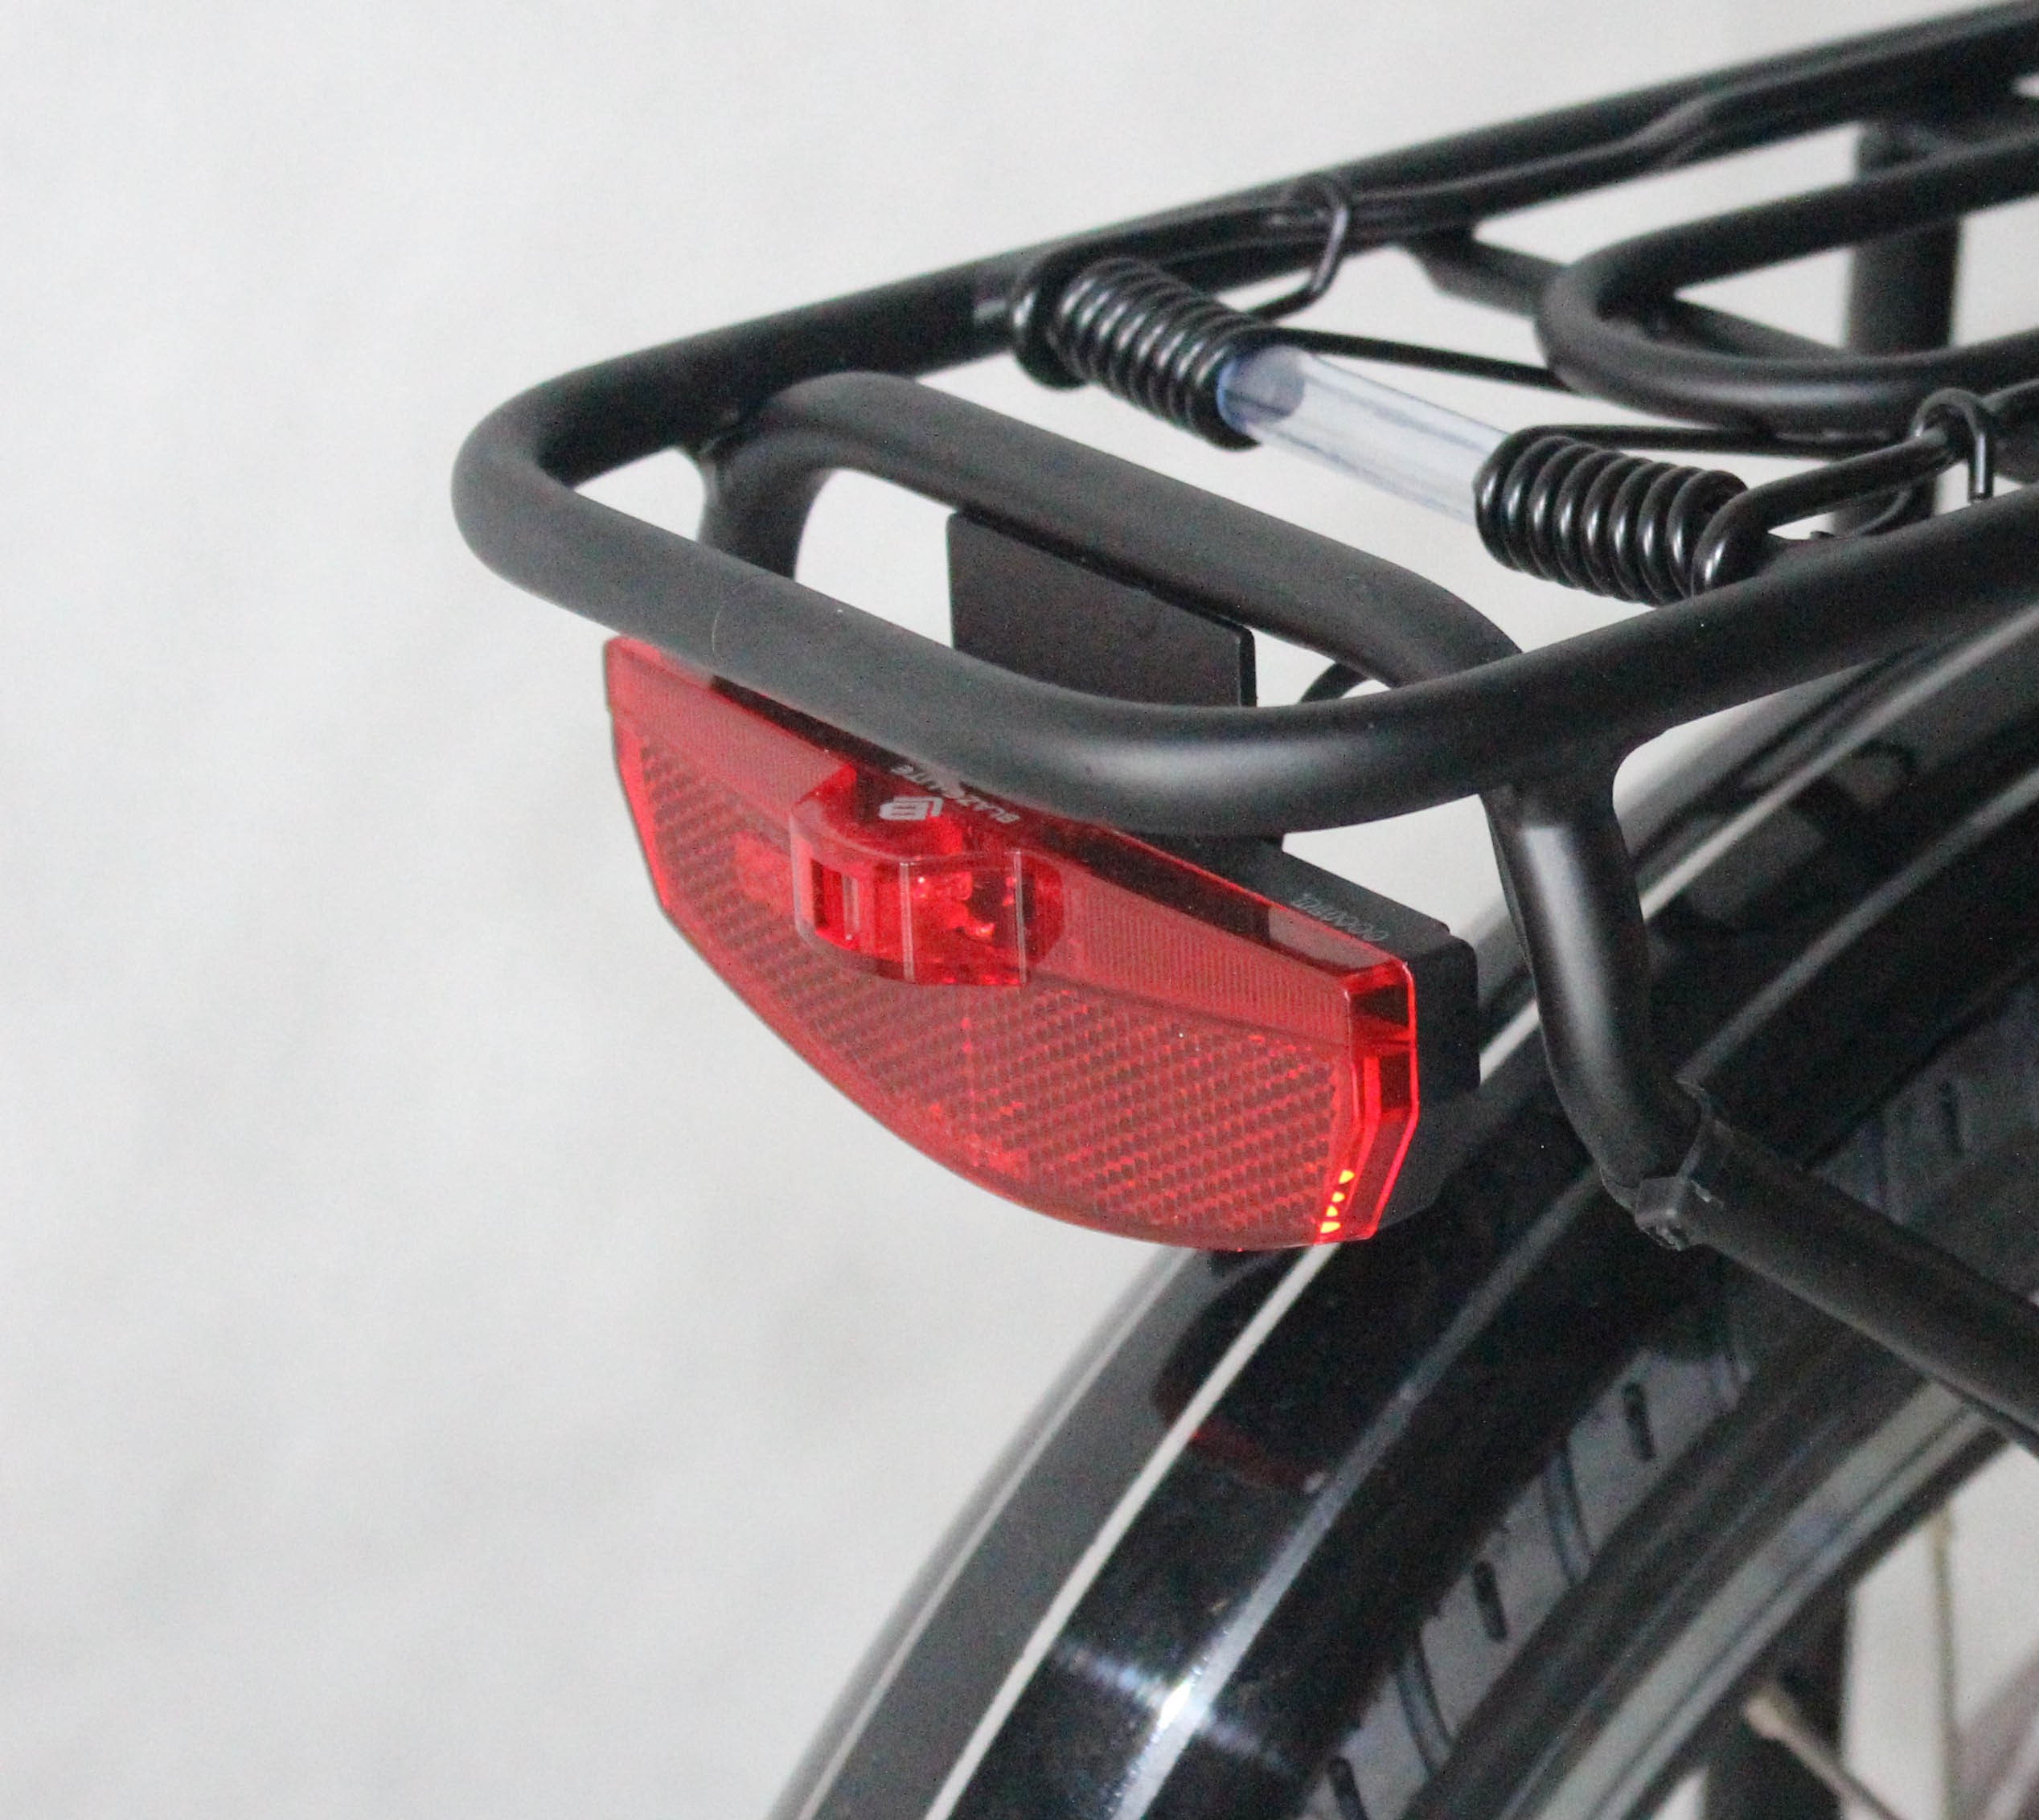 Rear Light For Mirrorstone e-Bike